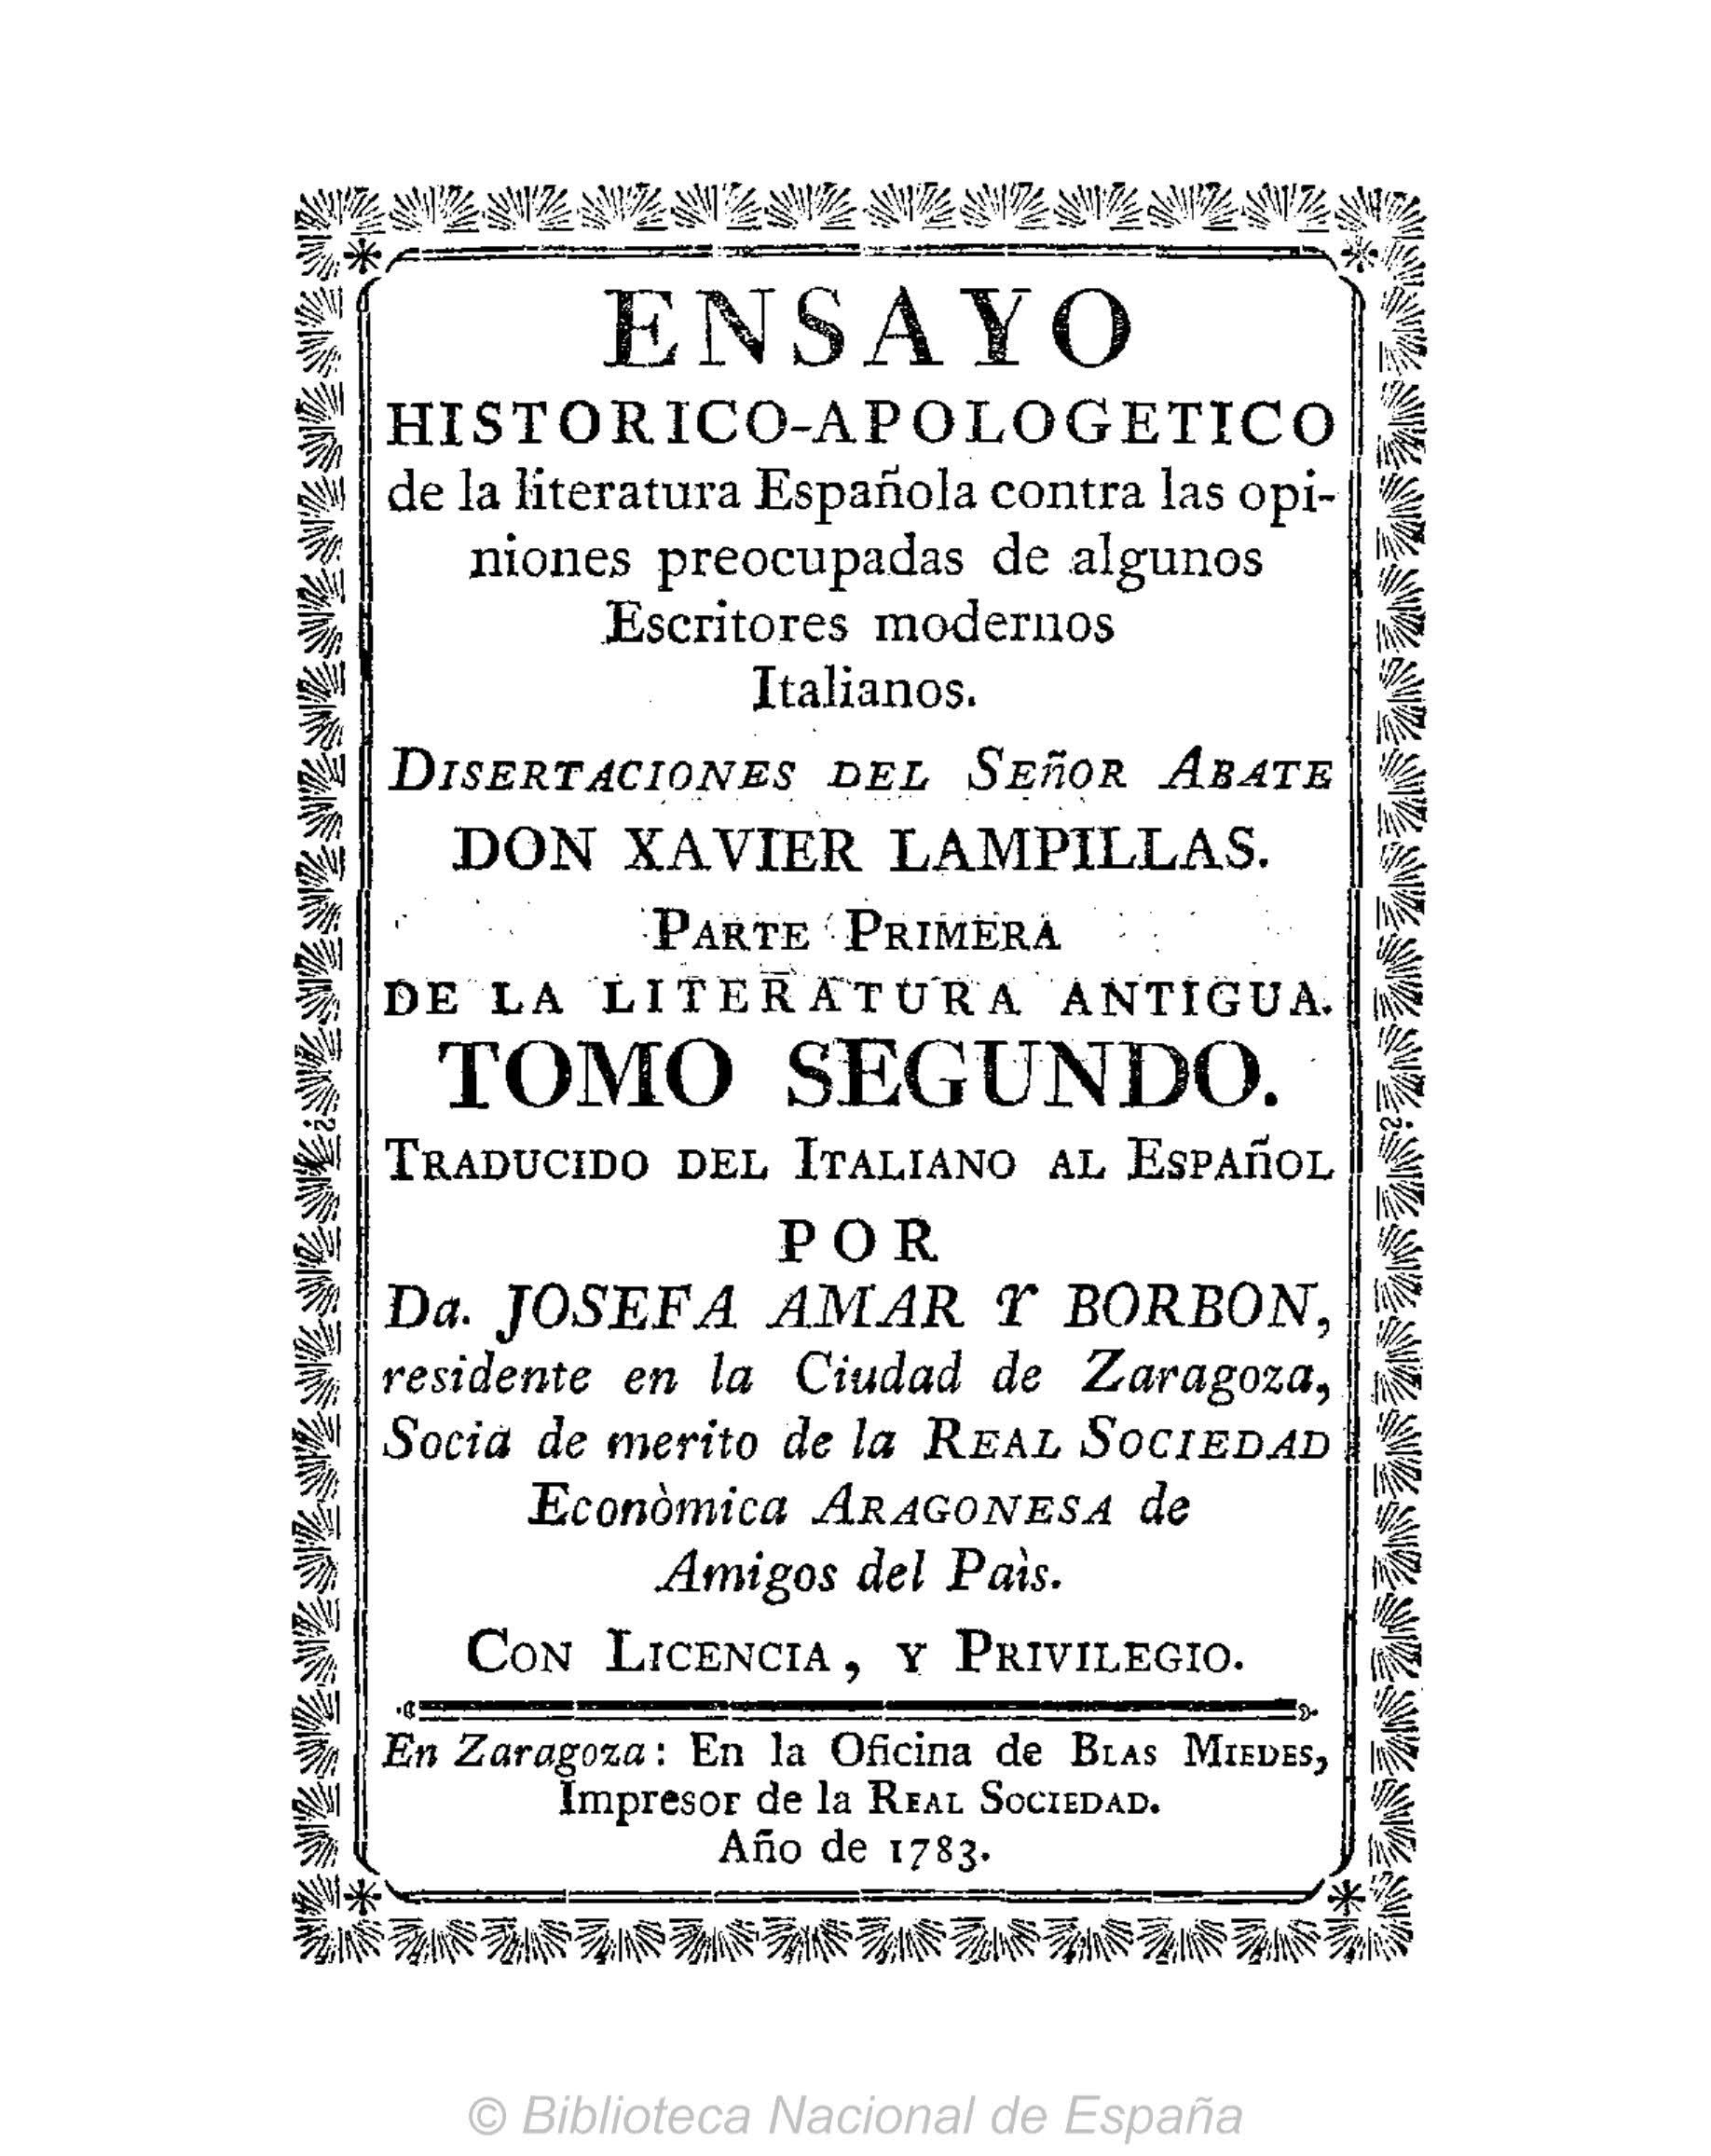 Ensayo histórico-apologético de la literatura española contra las opiniones de algunos escritores modernos italianos, Parte I, Tomo II